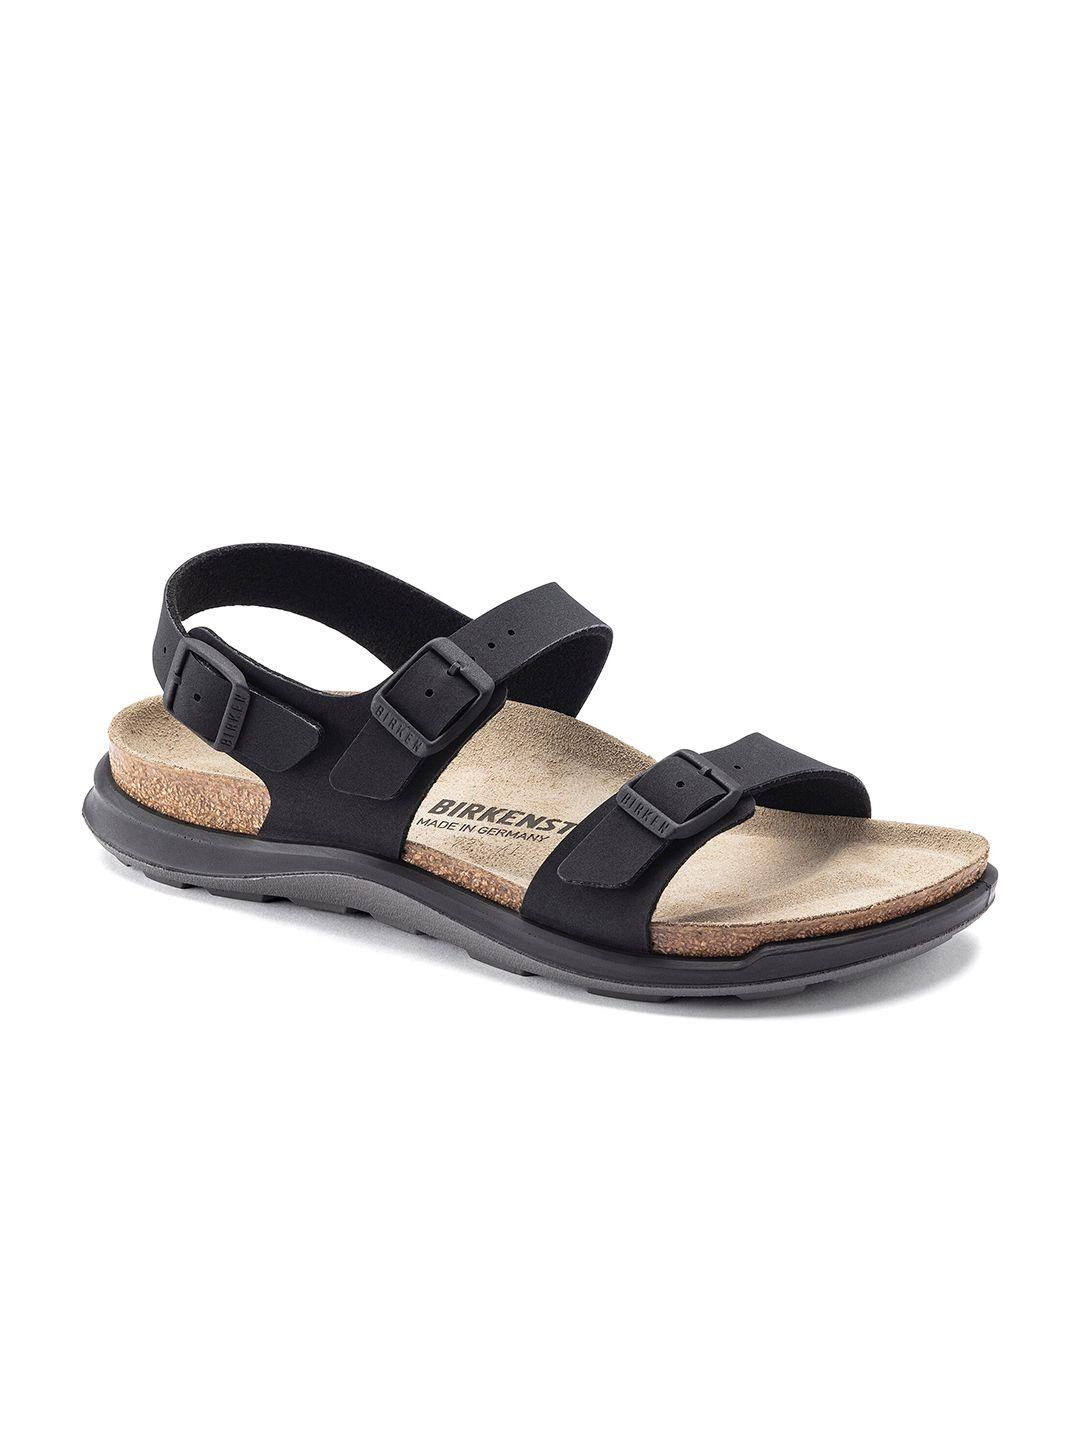 birkenstock women black & beige narrow width solid sonora sport sandals